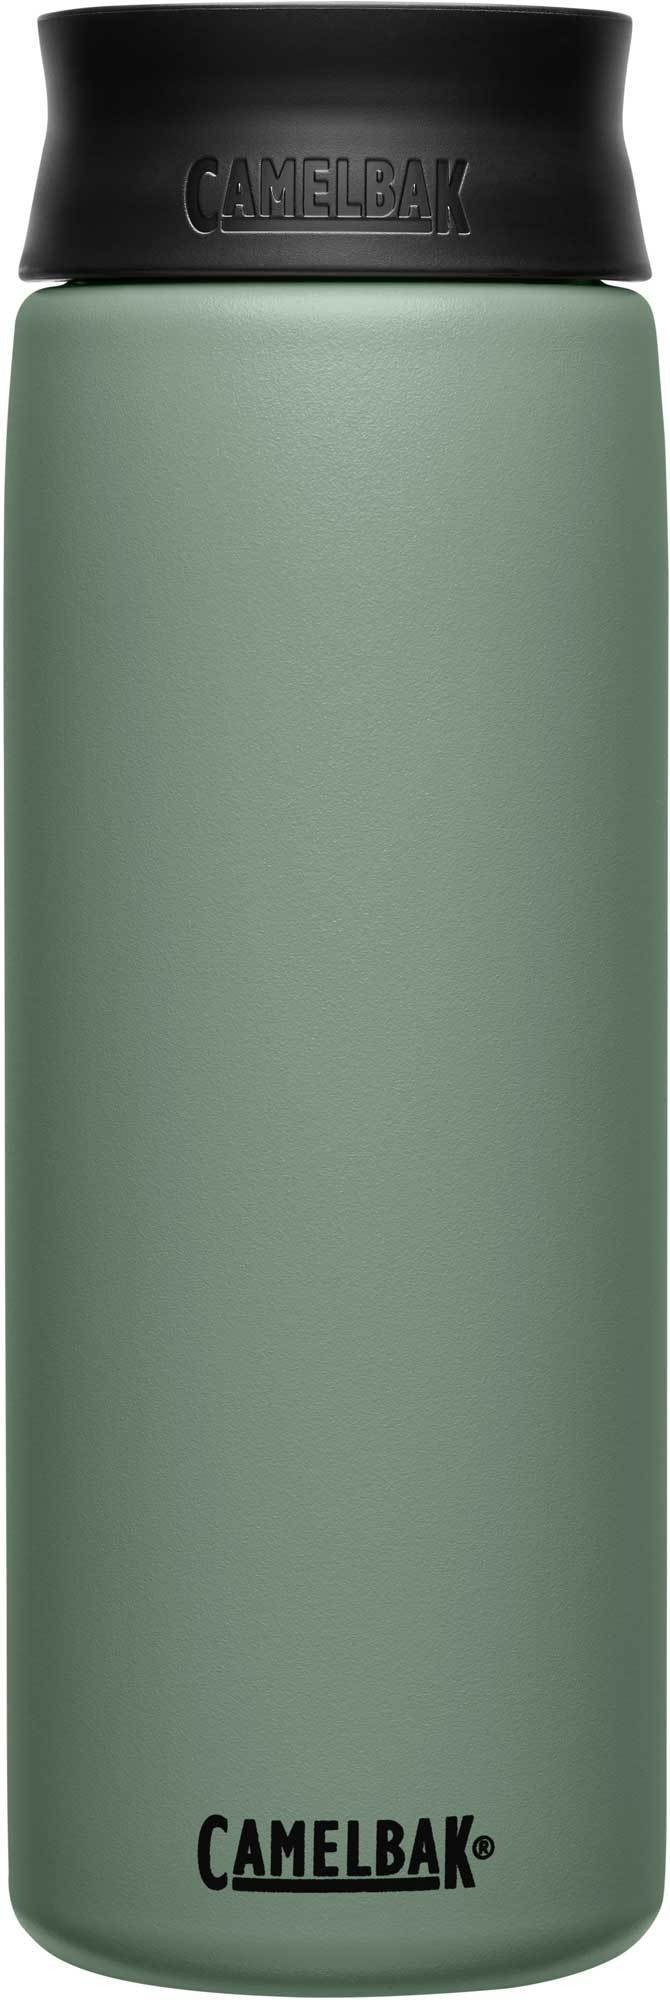 Термокружка CamelBak Hot Cap (0,6 литра), зеленая